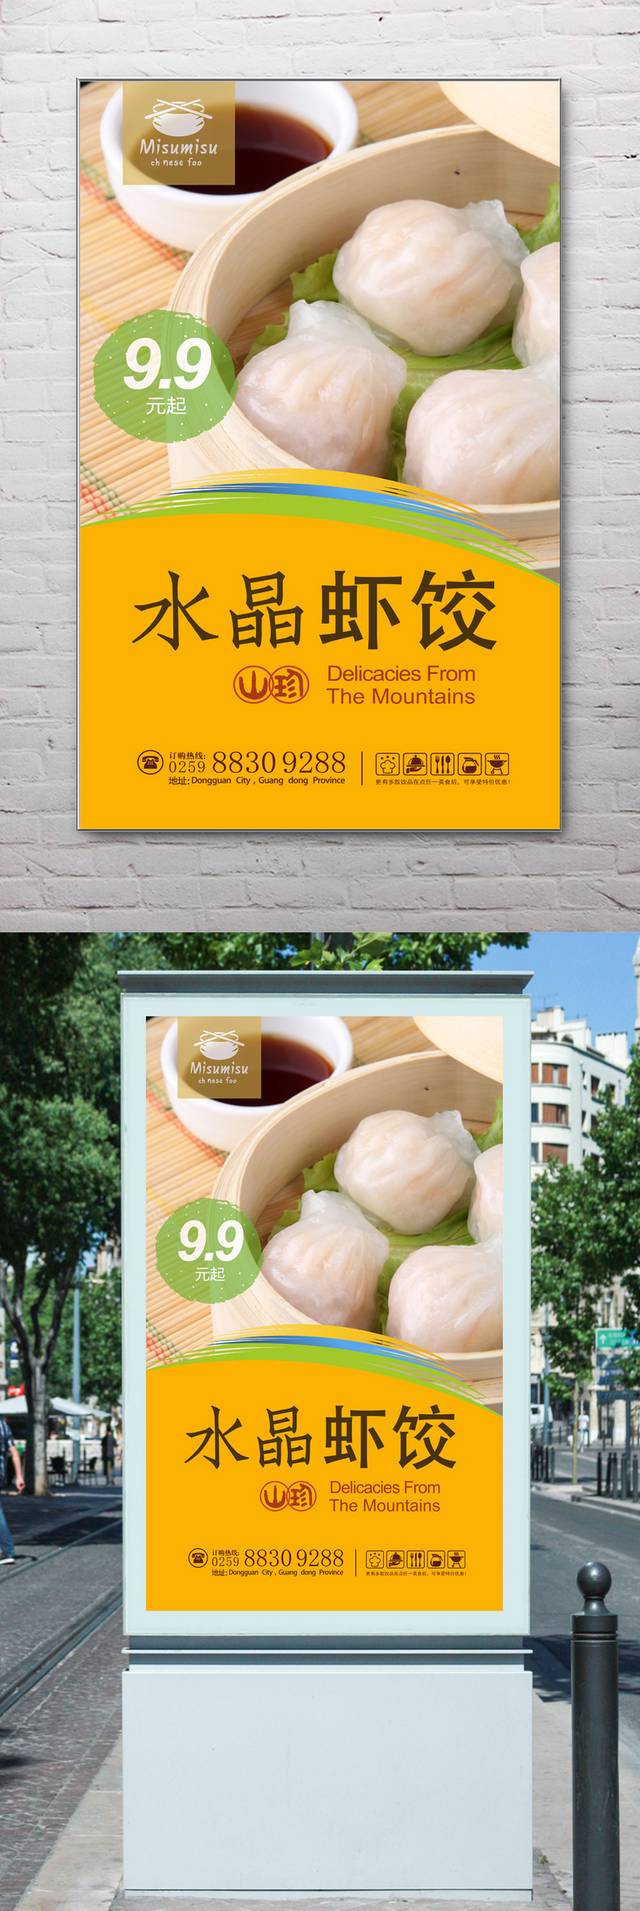 美味水晶虾饺宣传海报设计